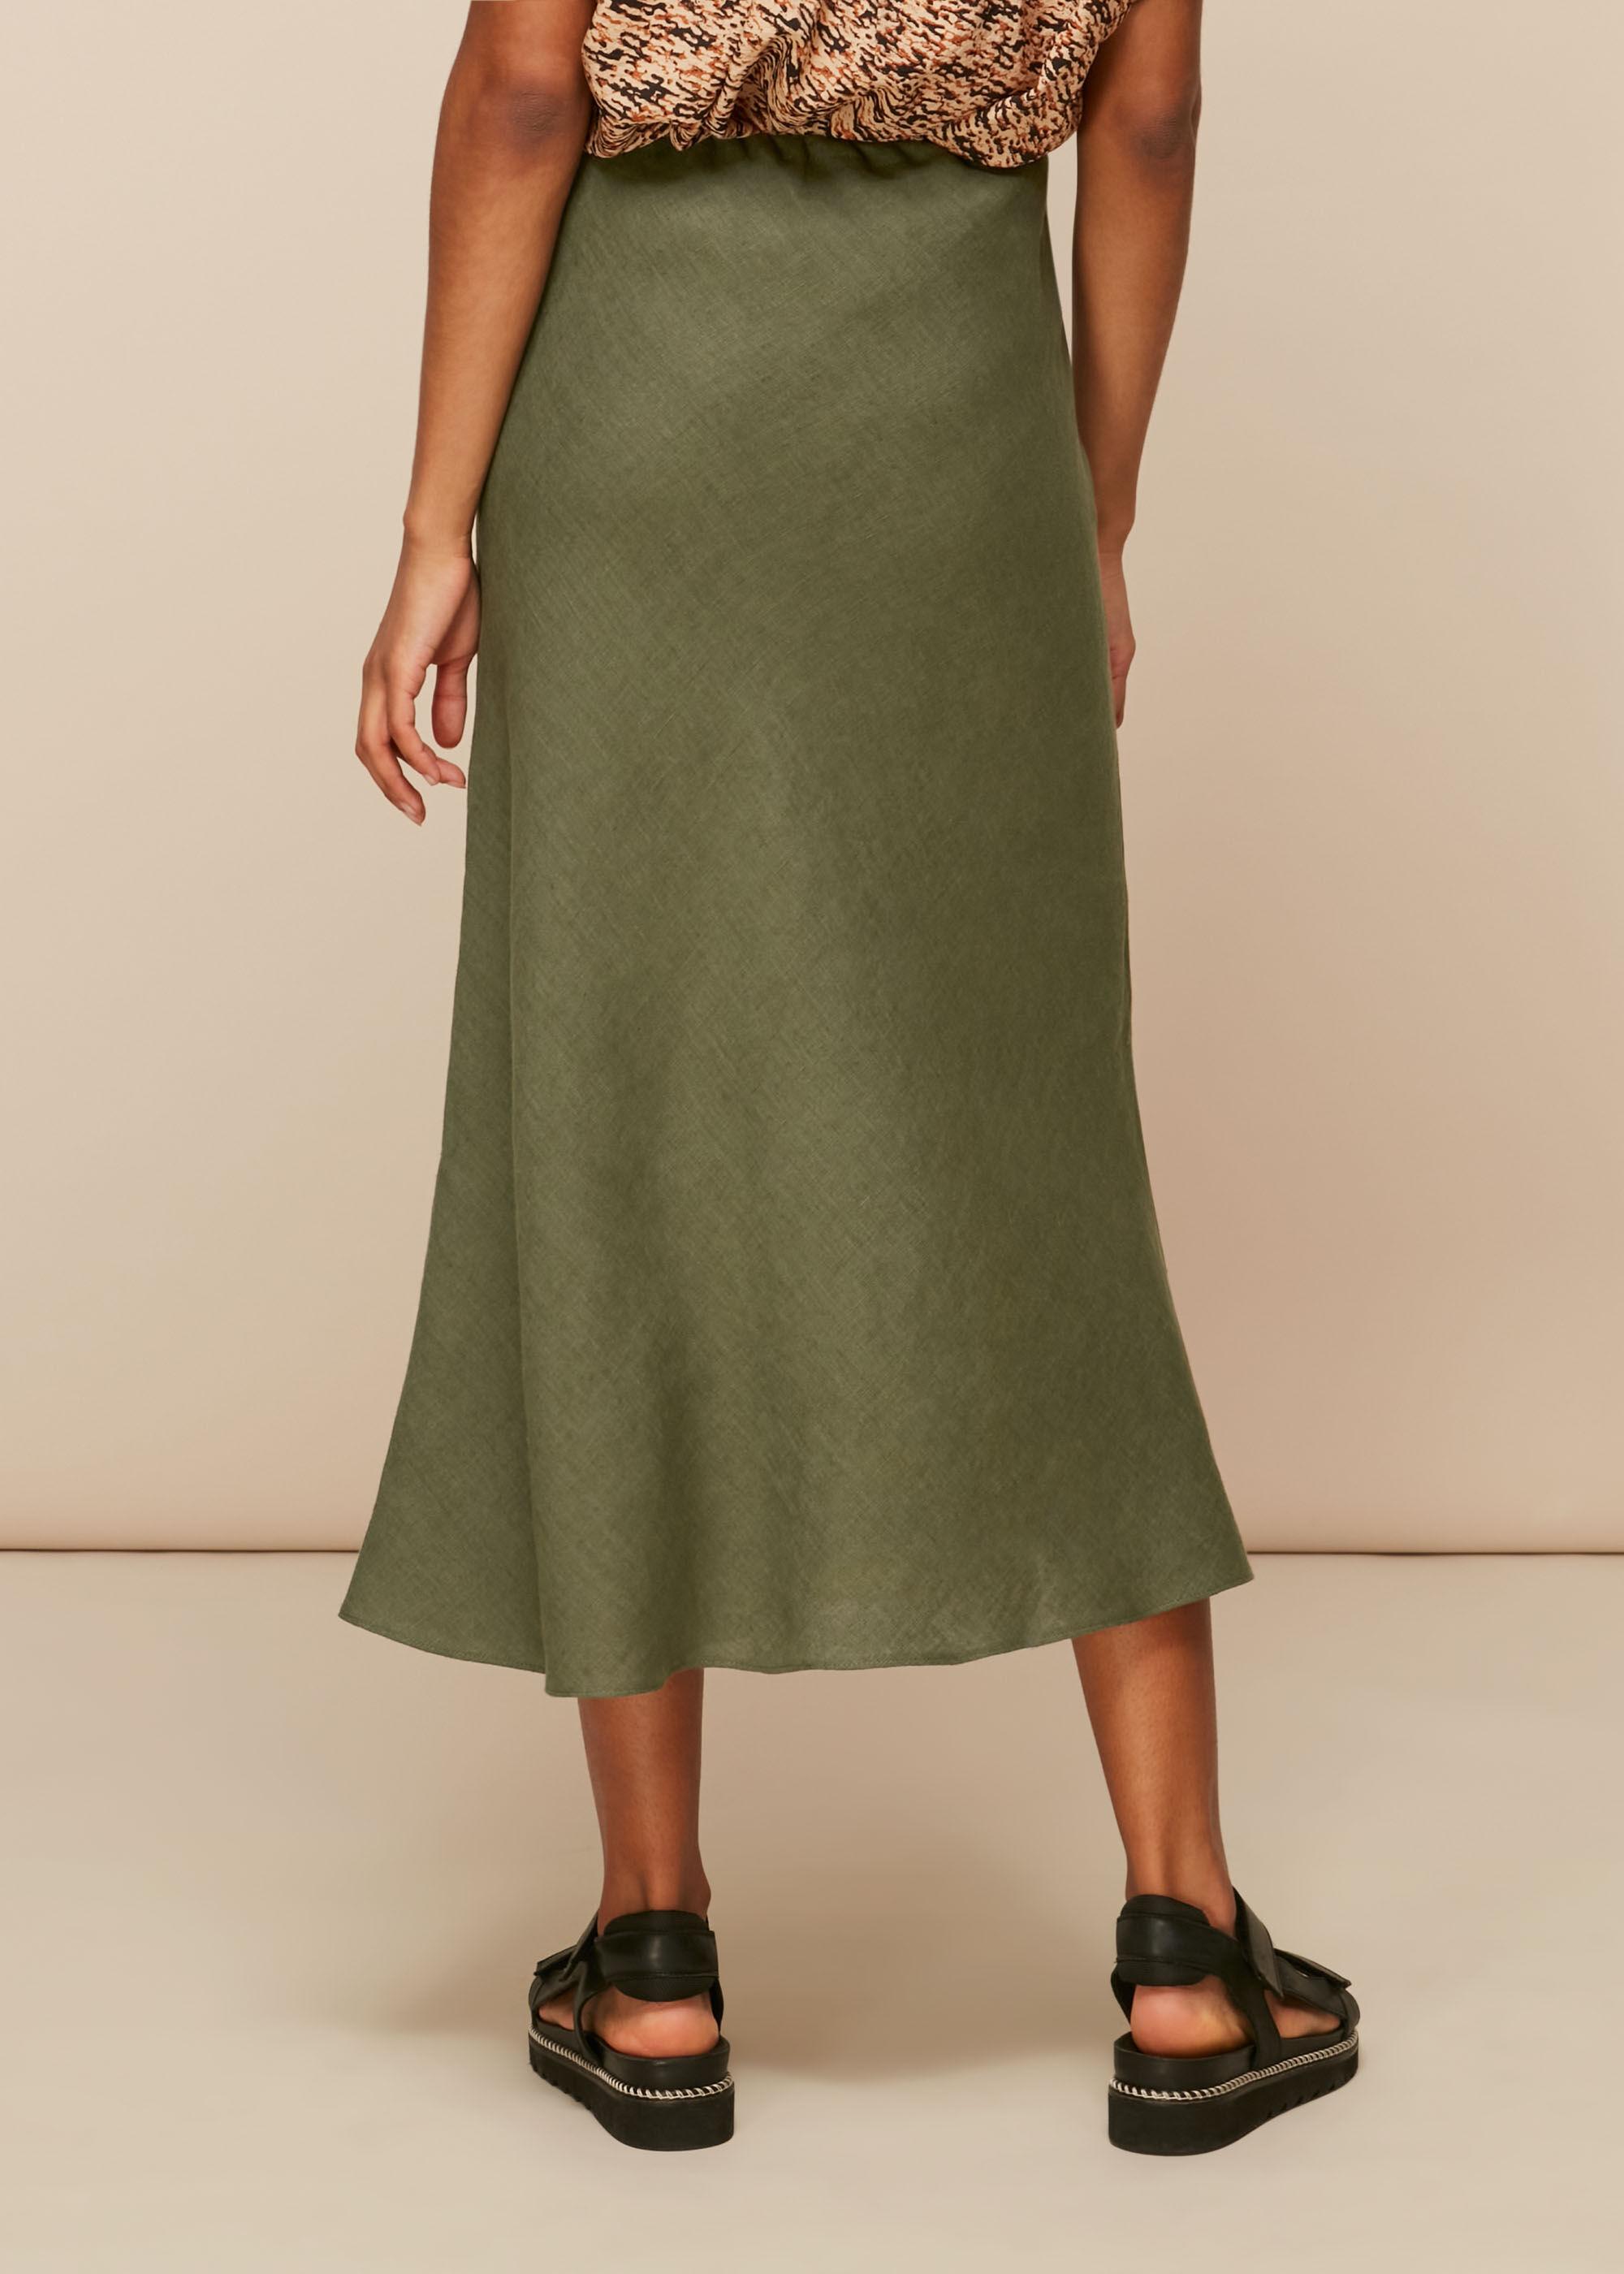 Whistles Women's Green Linen Bias Cut Skirt